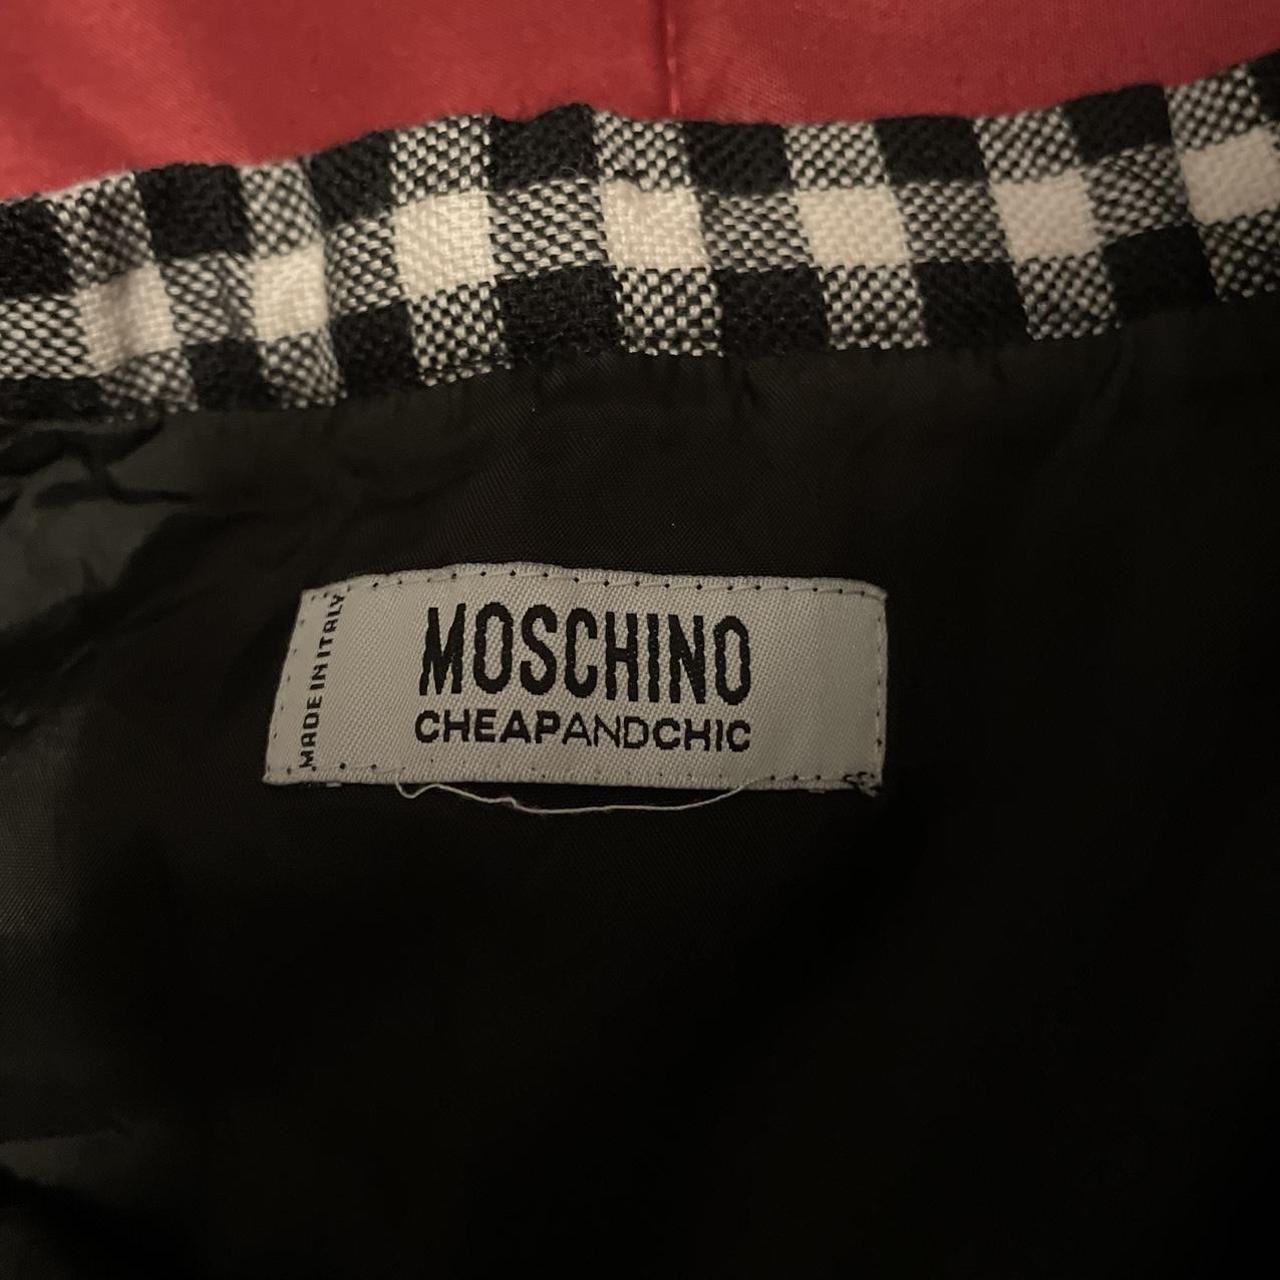 Moschino Cheap & Chic Women's Black and White Skirt (5)